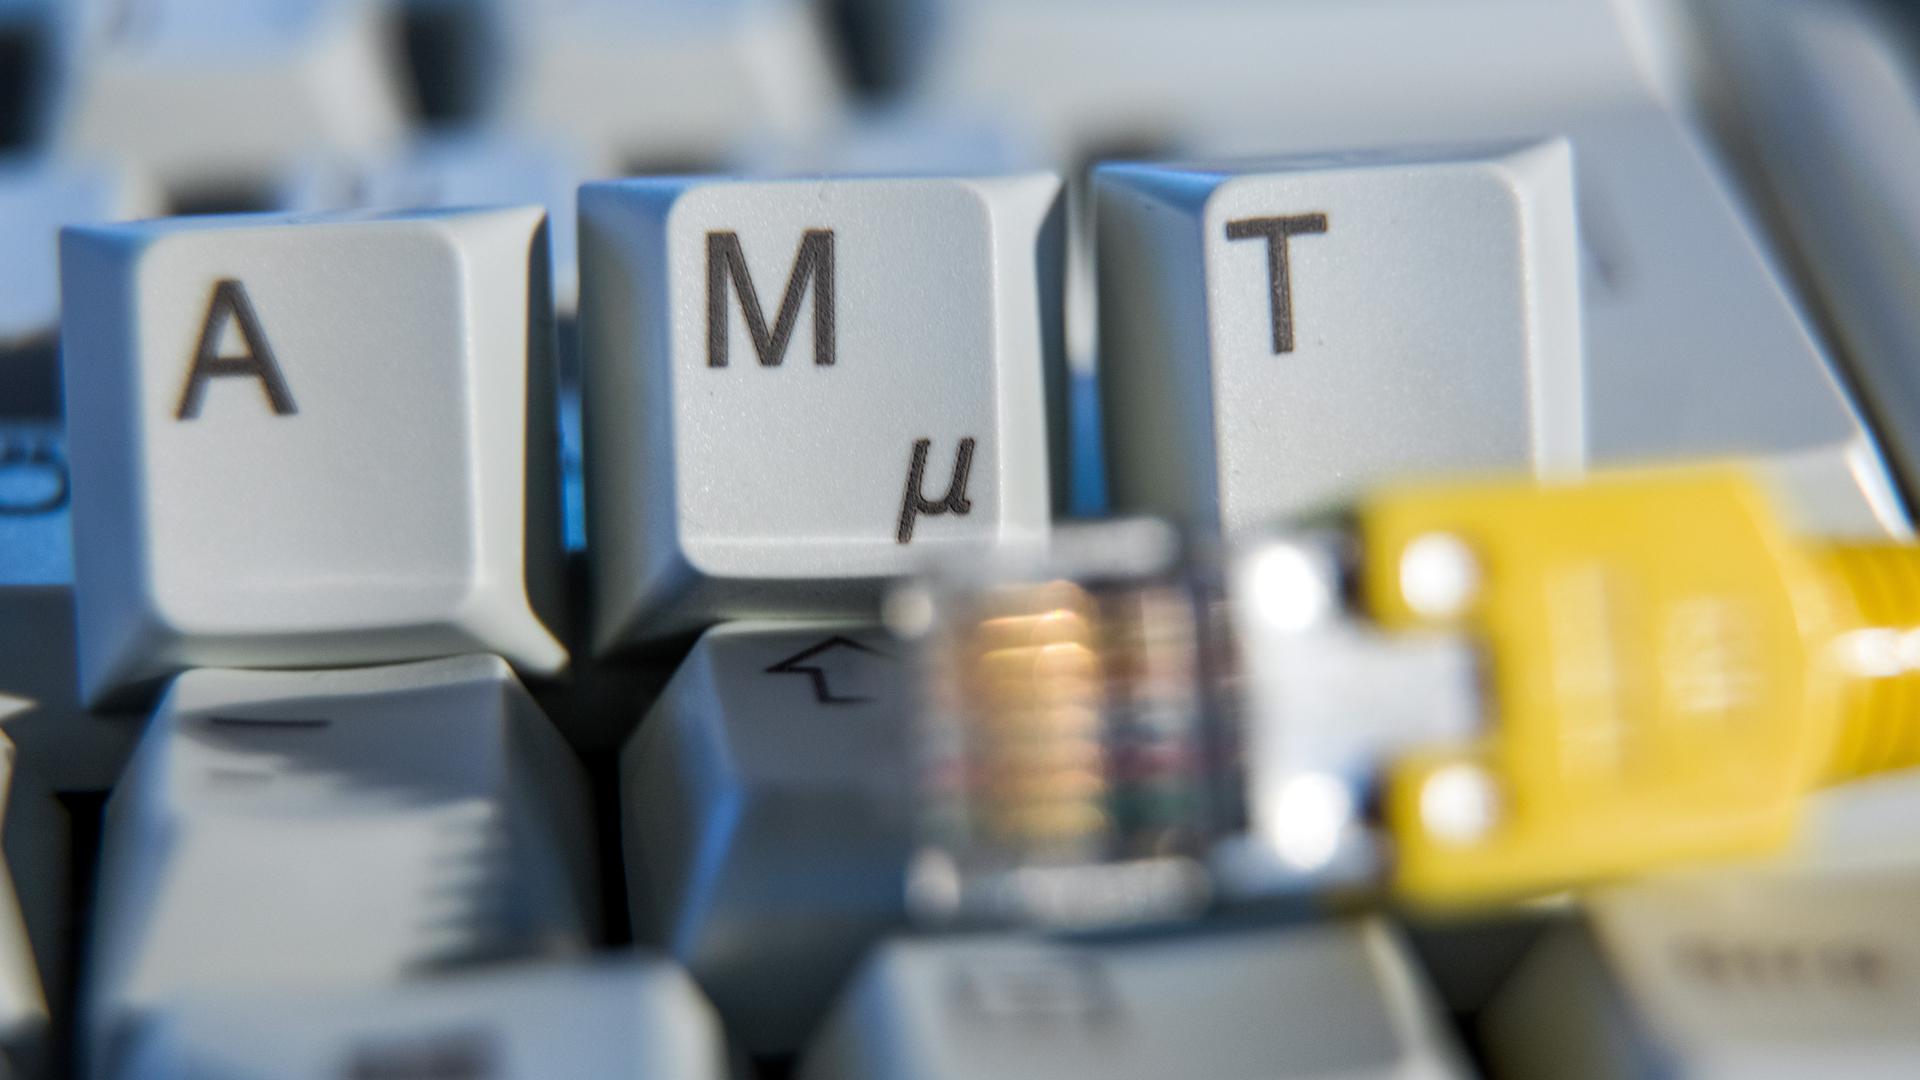 Der Schriftzug «Amt» ist auf einer Computertastatur hinter einem Netzwerkkabel zu sehen.